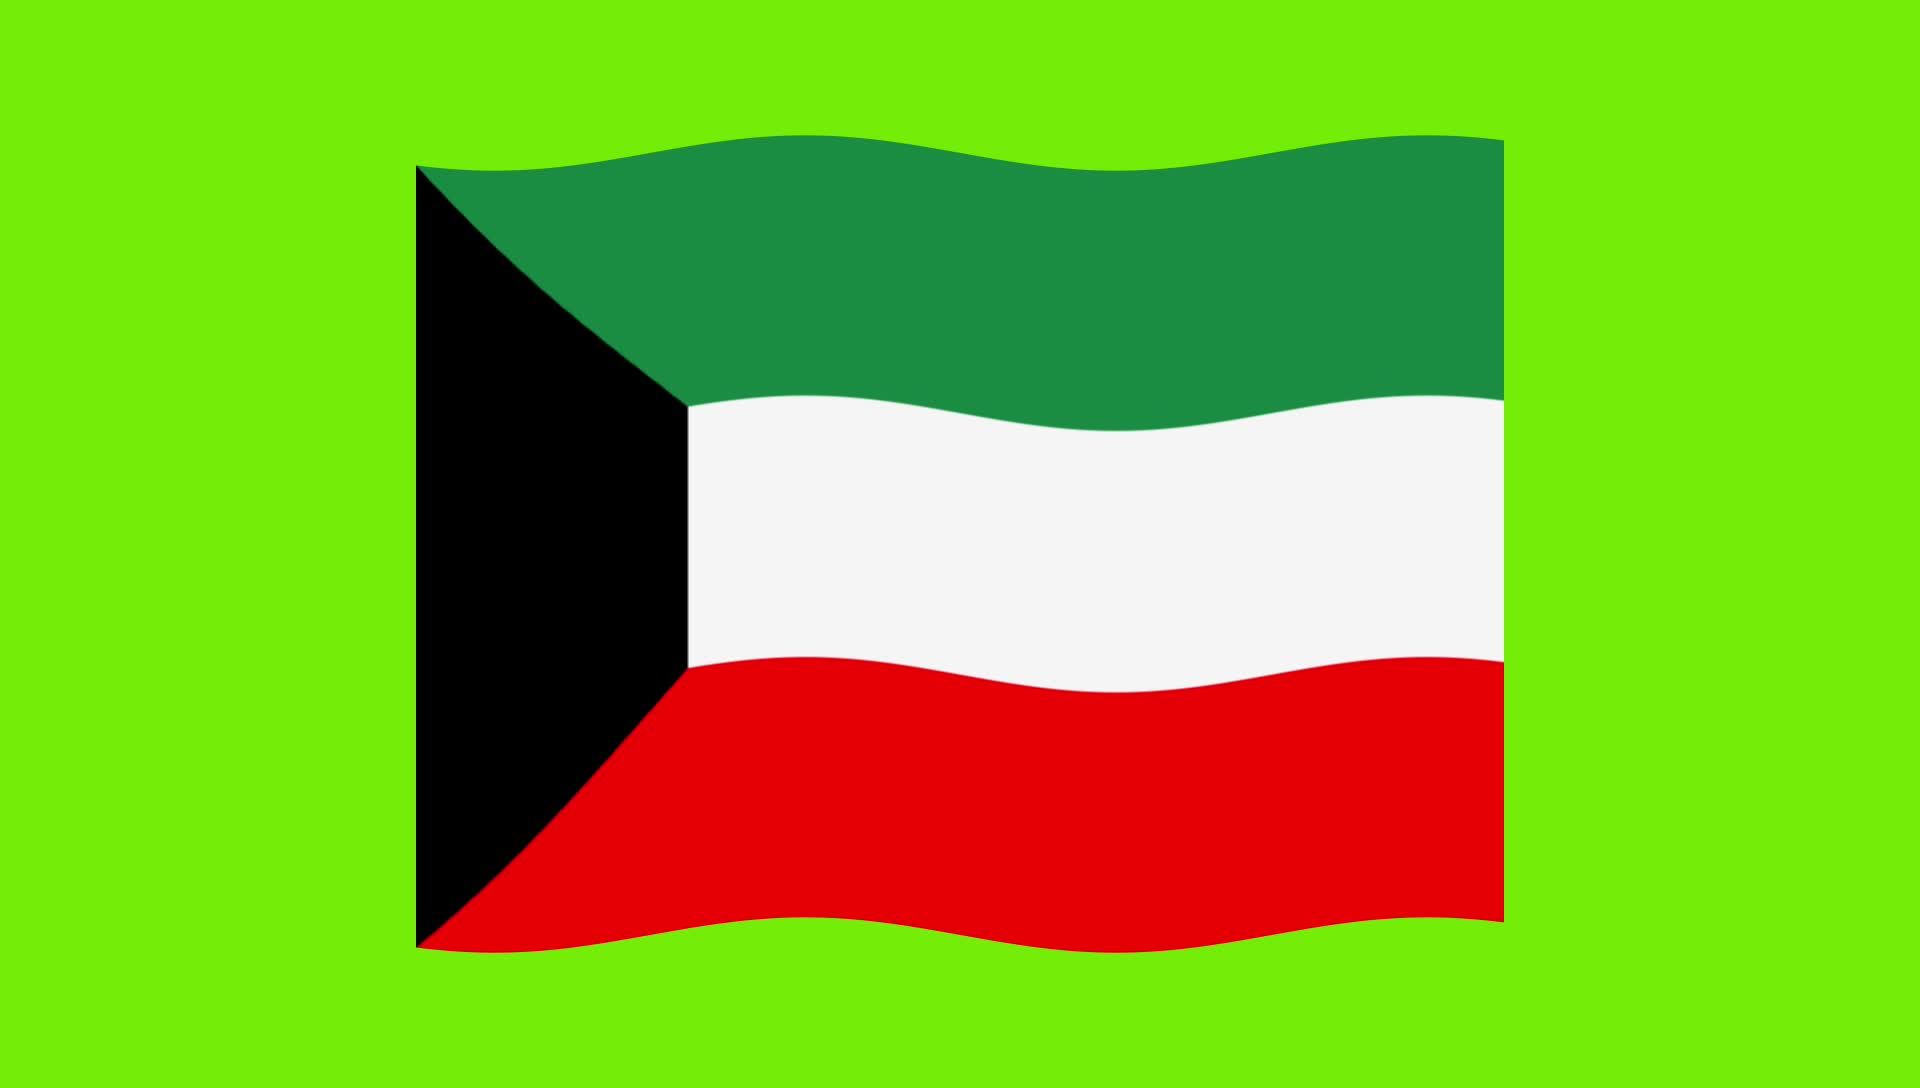 Hãy cùng chiêm ngưỡng cờ Kuwait trên nền xanh lá cây, mang đến cho bạn sự tự hào và tinh thần đoàn kết. Màu xanh lá cây tượng trưng cho sự tươi mới và hy vọng, kết hợp với màu đỏ trên cờ, tạo nên sự hoàn hảo và khái niệm về đất nước Kuwait.